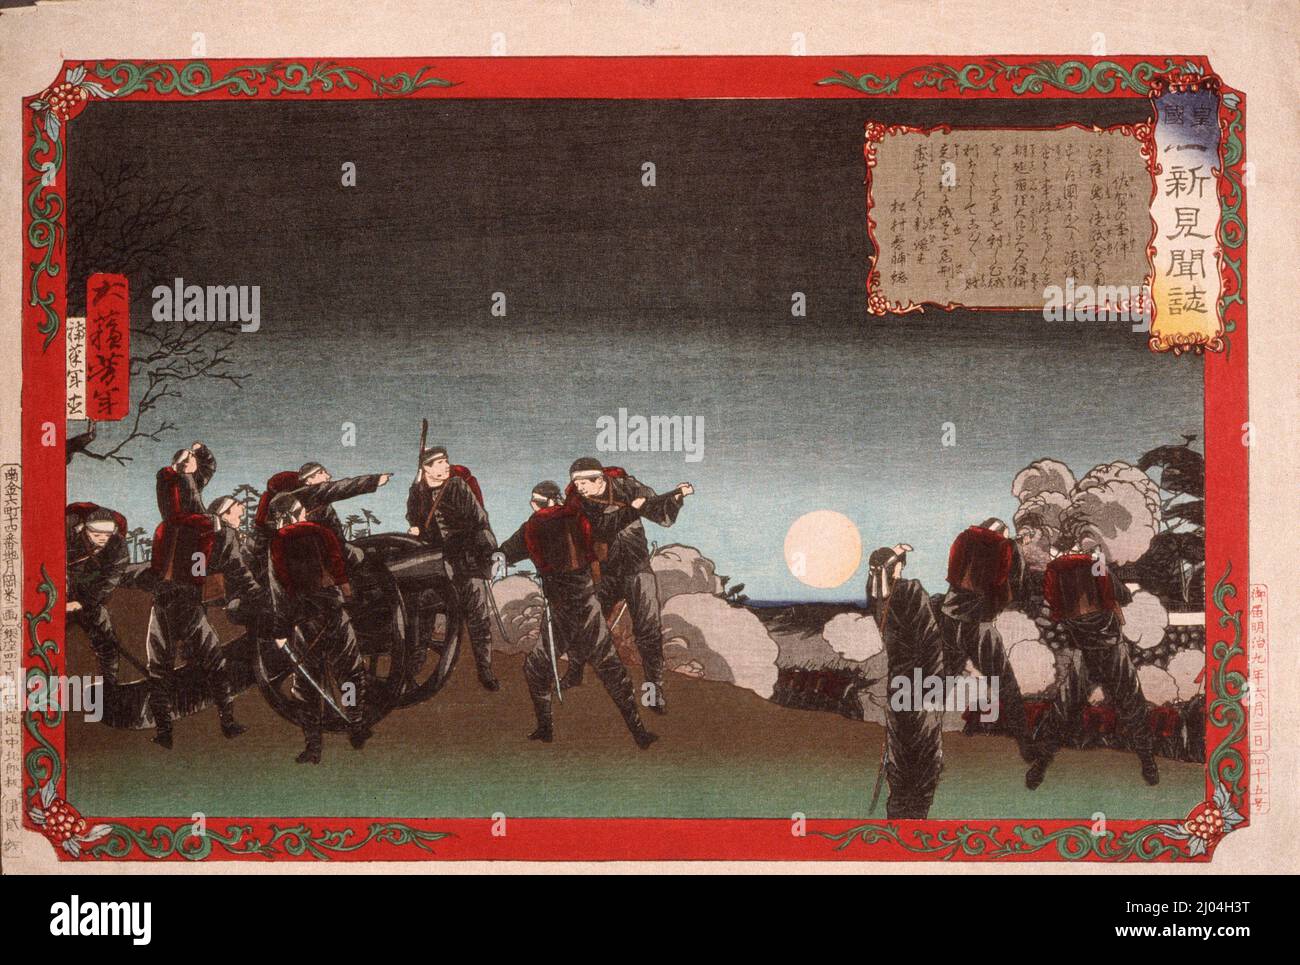 El incidente de Saga. Tsukioka Yoshitoshi (Japón, 1839-1892). Japón, 1876, junio. Impresiones; bloques de madera. Estampado de bloques de madera en color Foto de stock